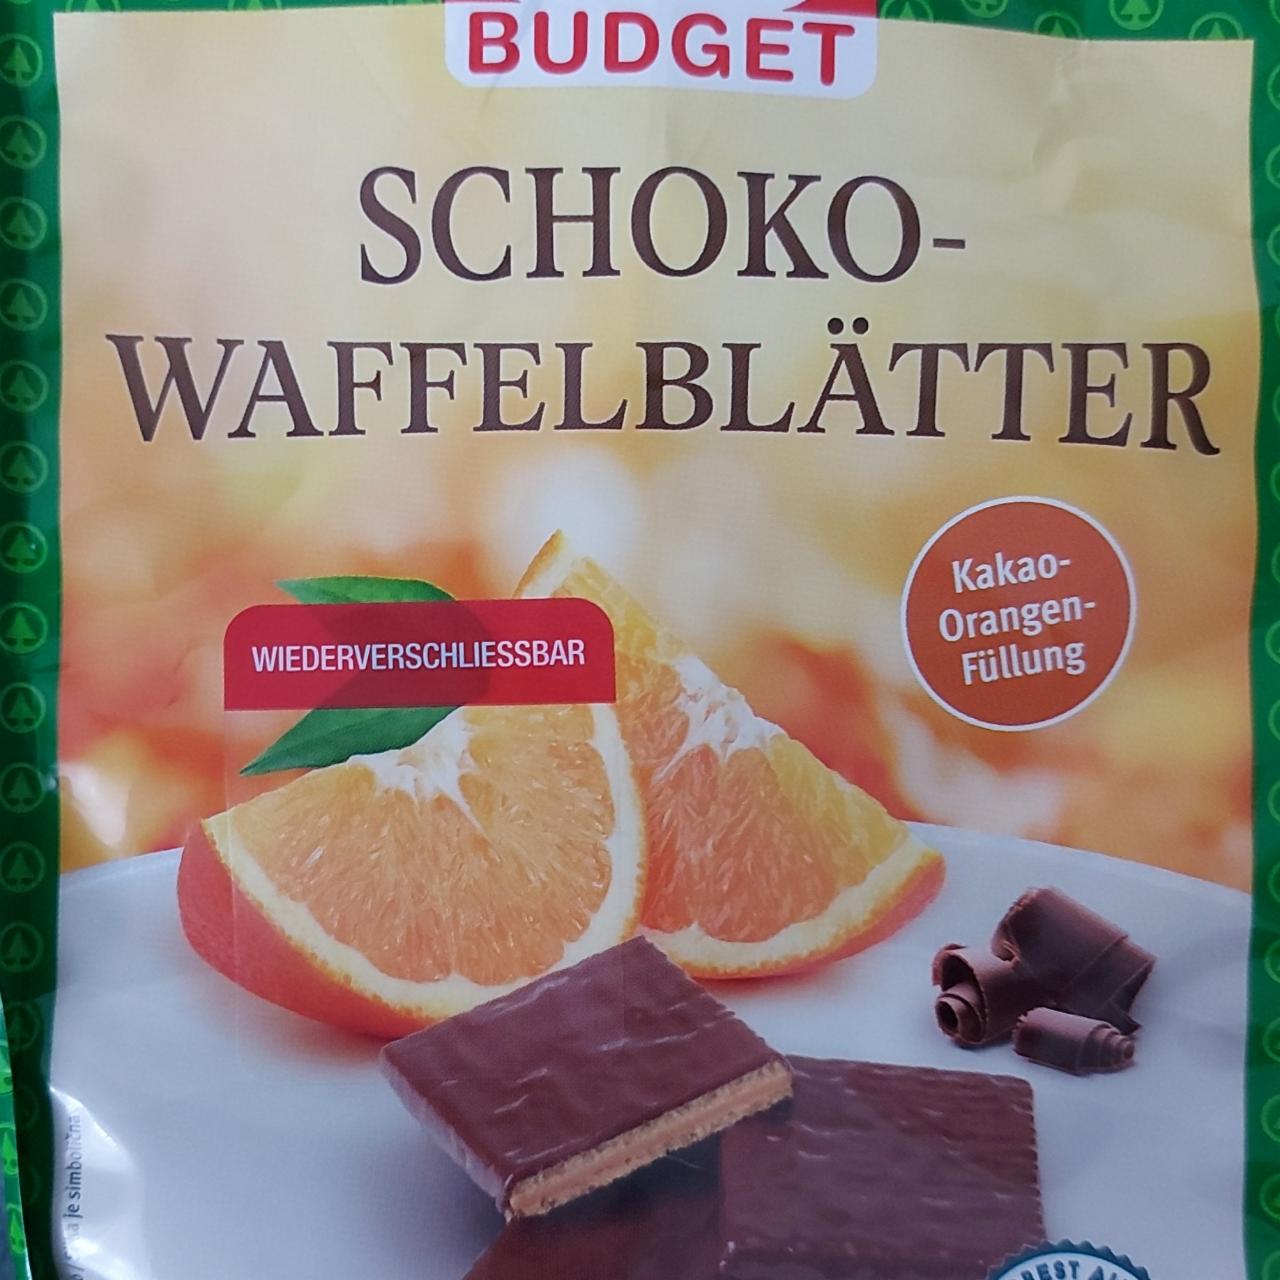 Fotografie - SchokoWaffelblätter Kakao-Orangen-Füllung S Budget